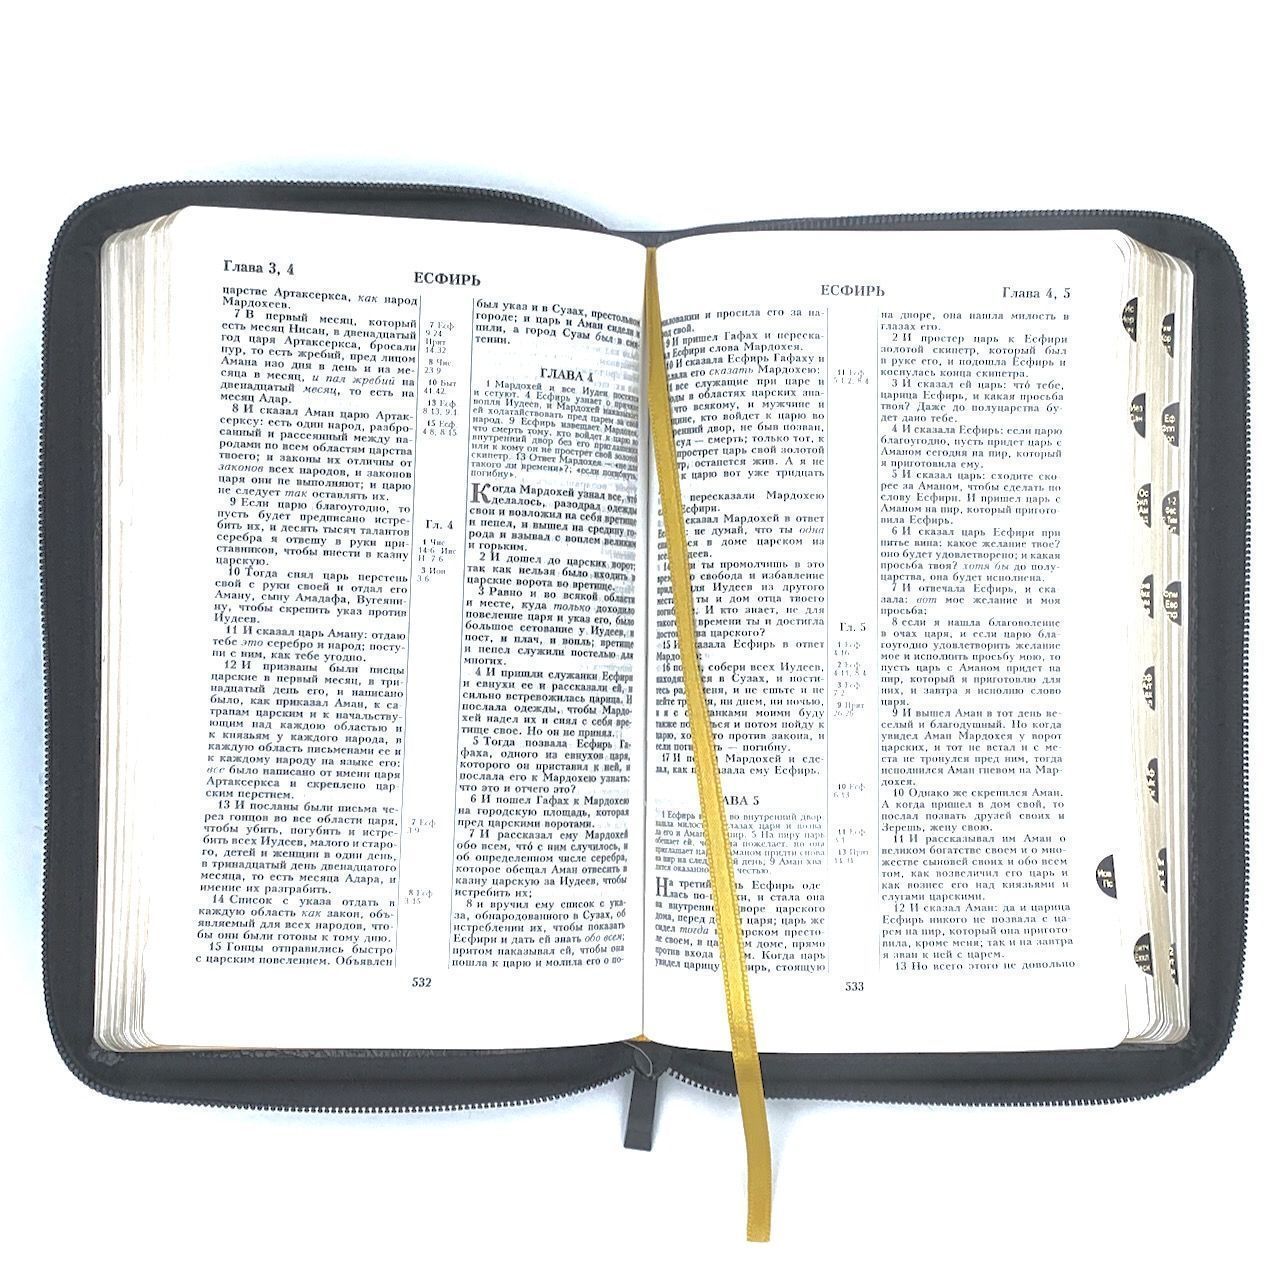 Библия 055zti кожаный переплет на молнии с индексами, цвет черный металлик, средний формат, 135*210 мм, параллельные места по центру страницы, золотой обрез, крупный шрифт